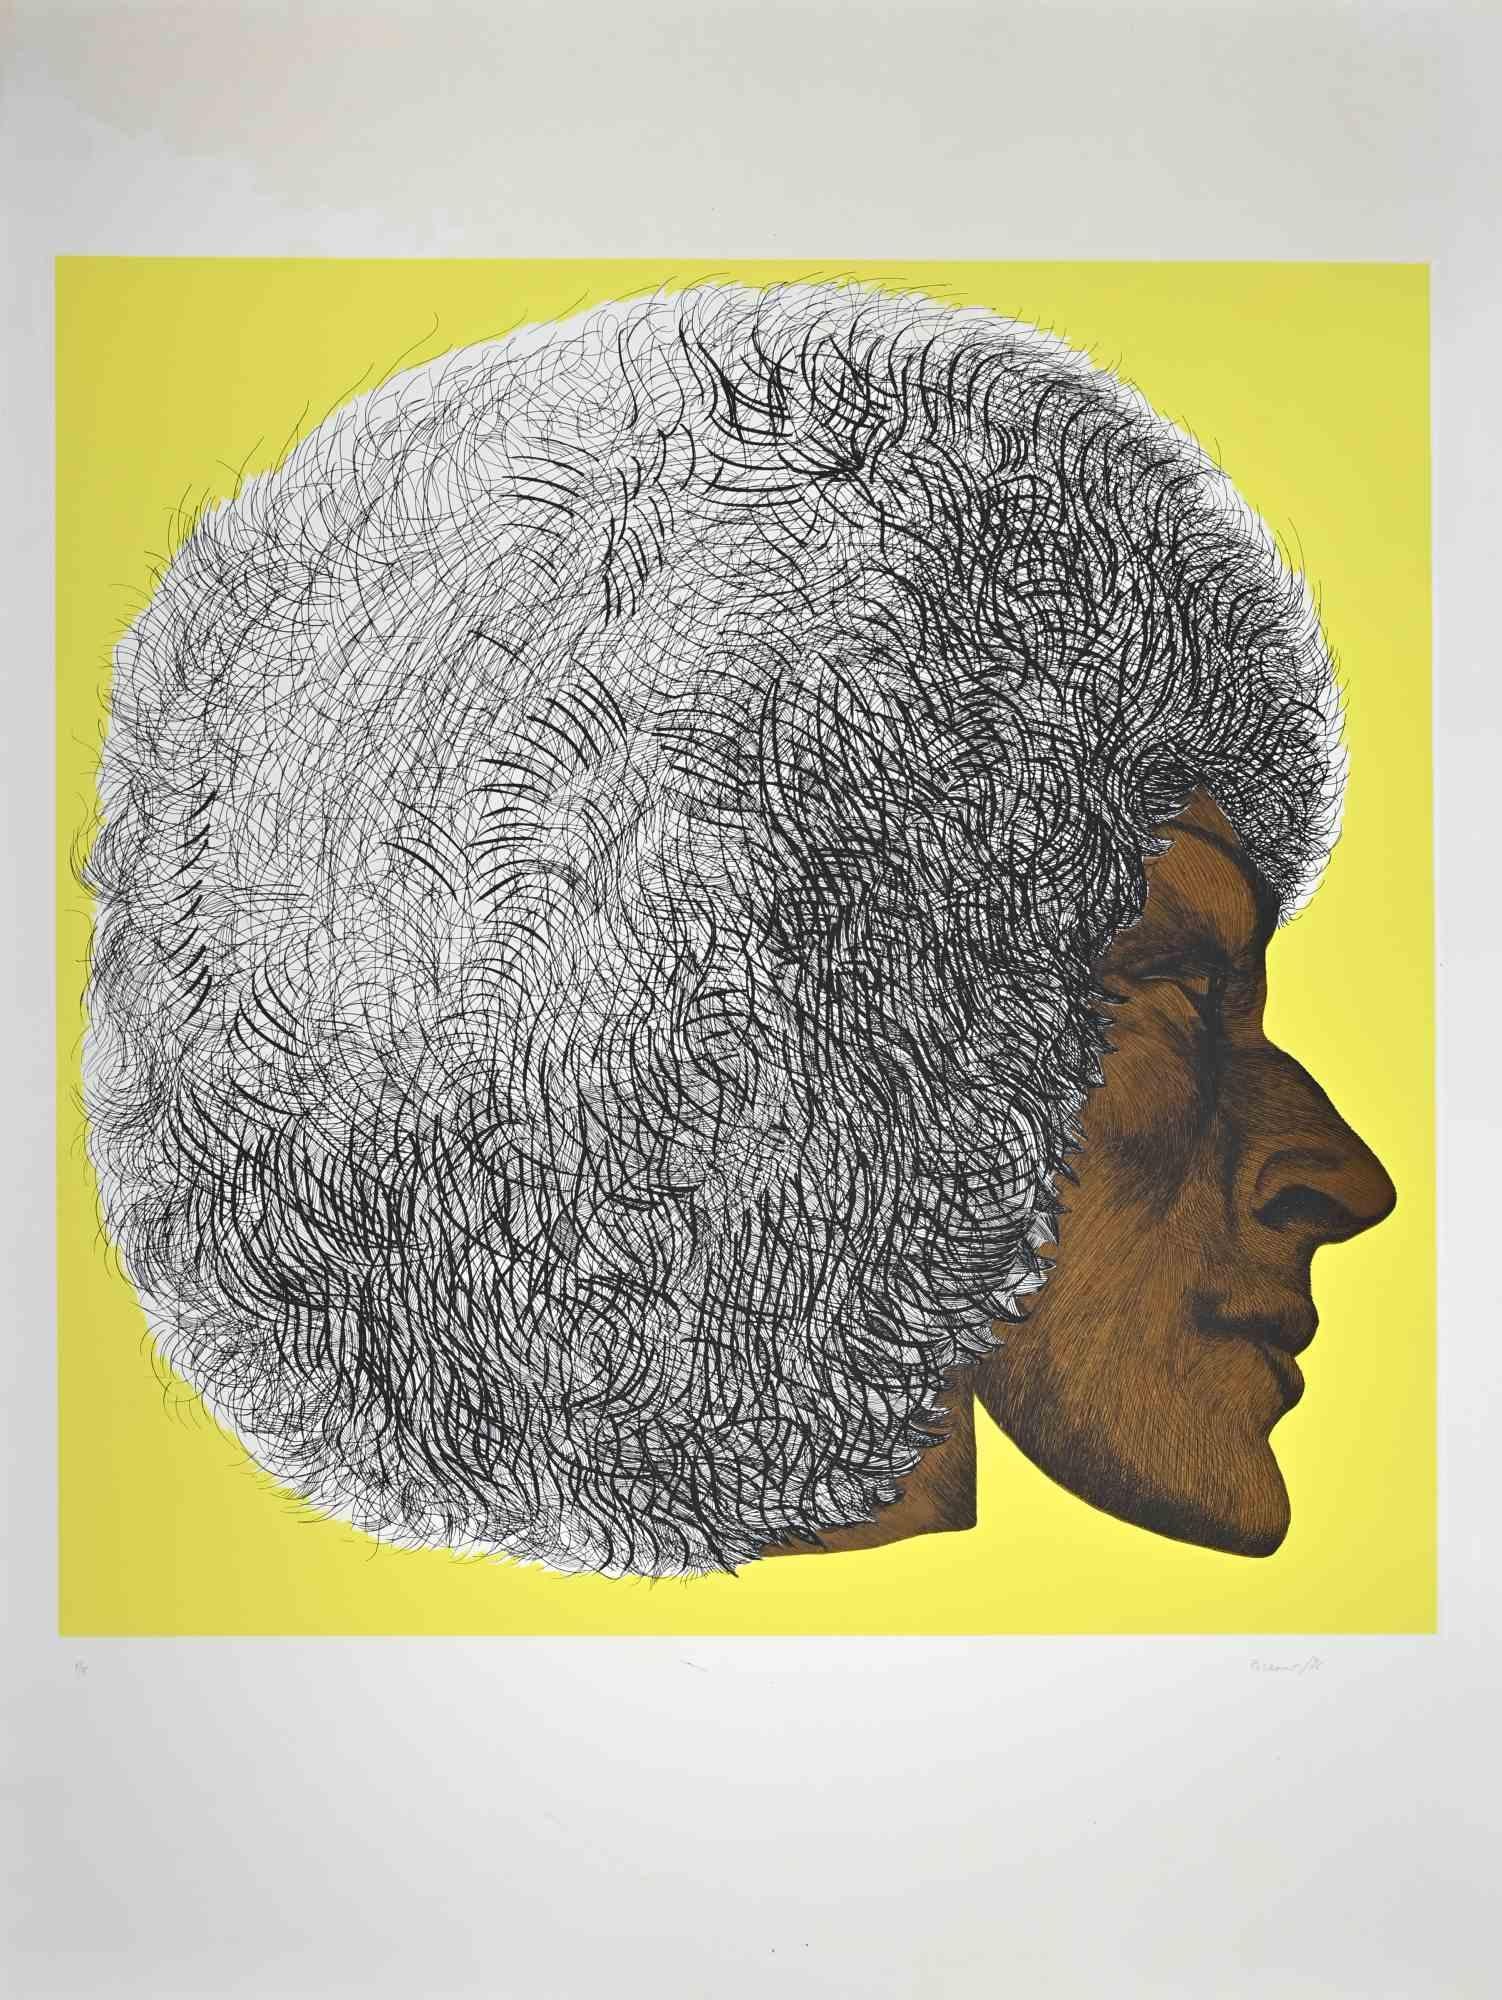 Profile Yellow II - Profilo giallo II est une œuvre d'art contemporain réalisée par Giacomo Porzano en 1972.

Signé et daté par l'artiste au crayon.

Numéroté dans la marge inférieure. Édition de 1/5